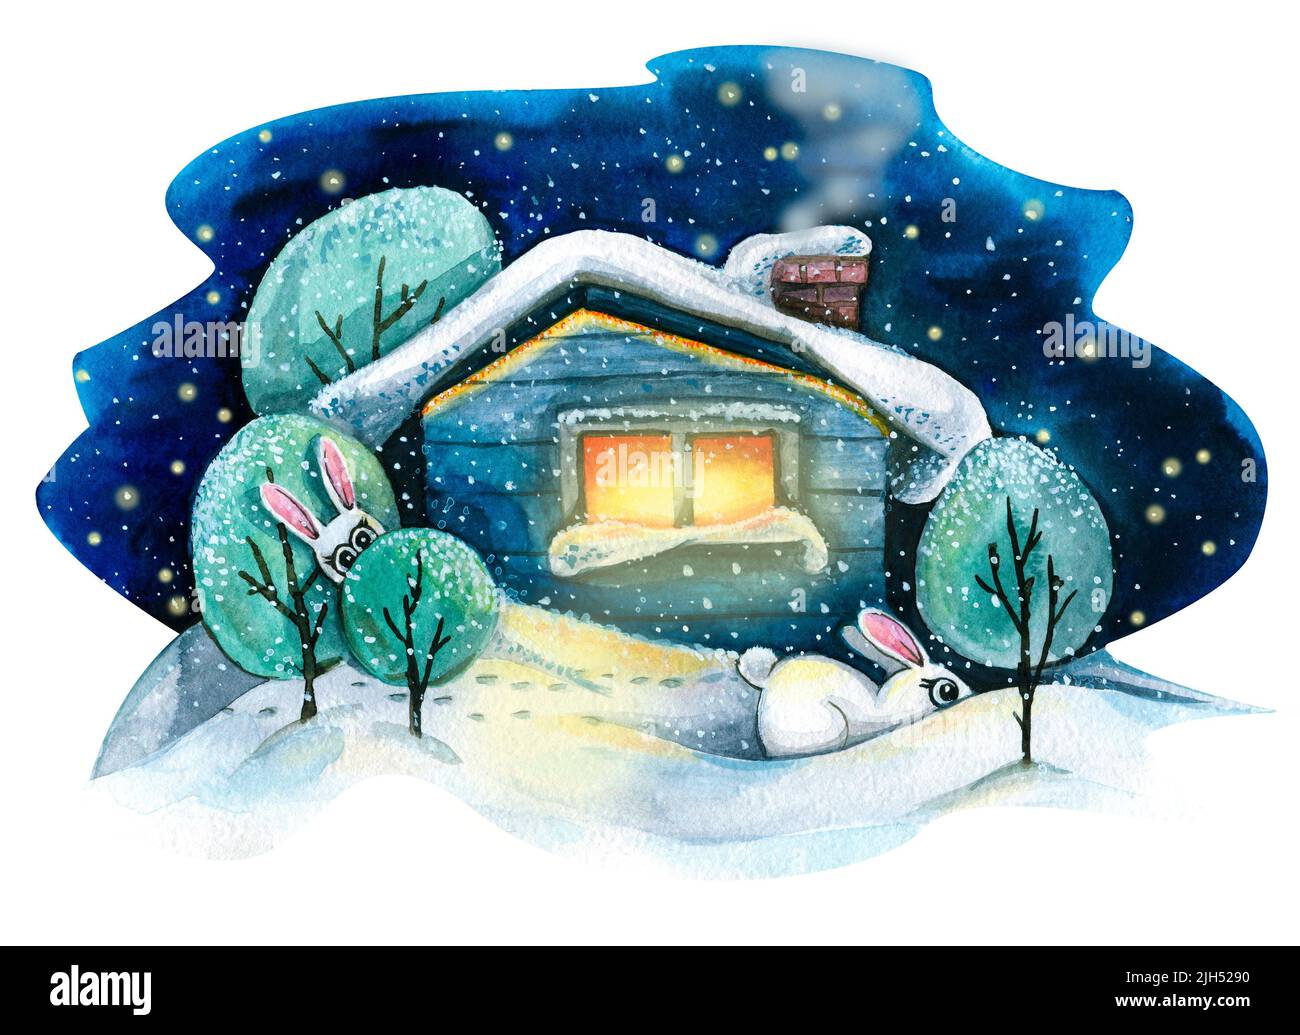 Une maison rustique dans la neige avec des arbres et des lapins mignons. Paysage d'hiver. Illustration aquarelle. Pour la conception et la décoration de cartes postales, affiches Banque D'Images